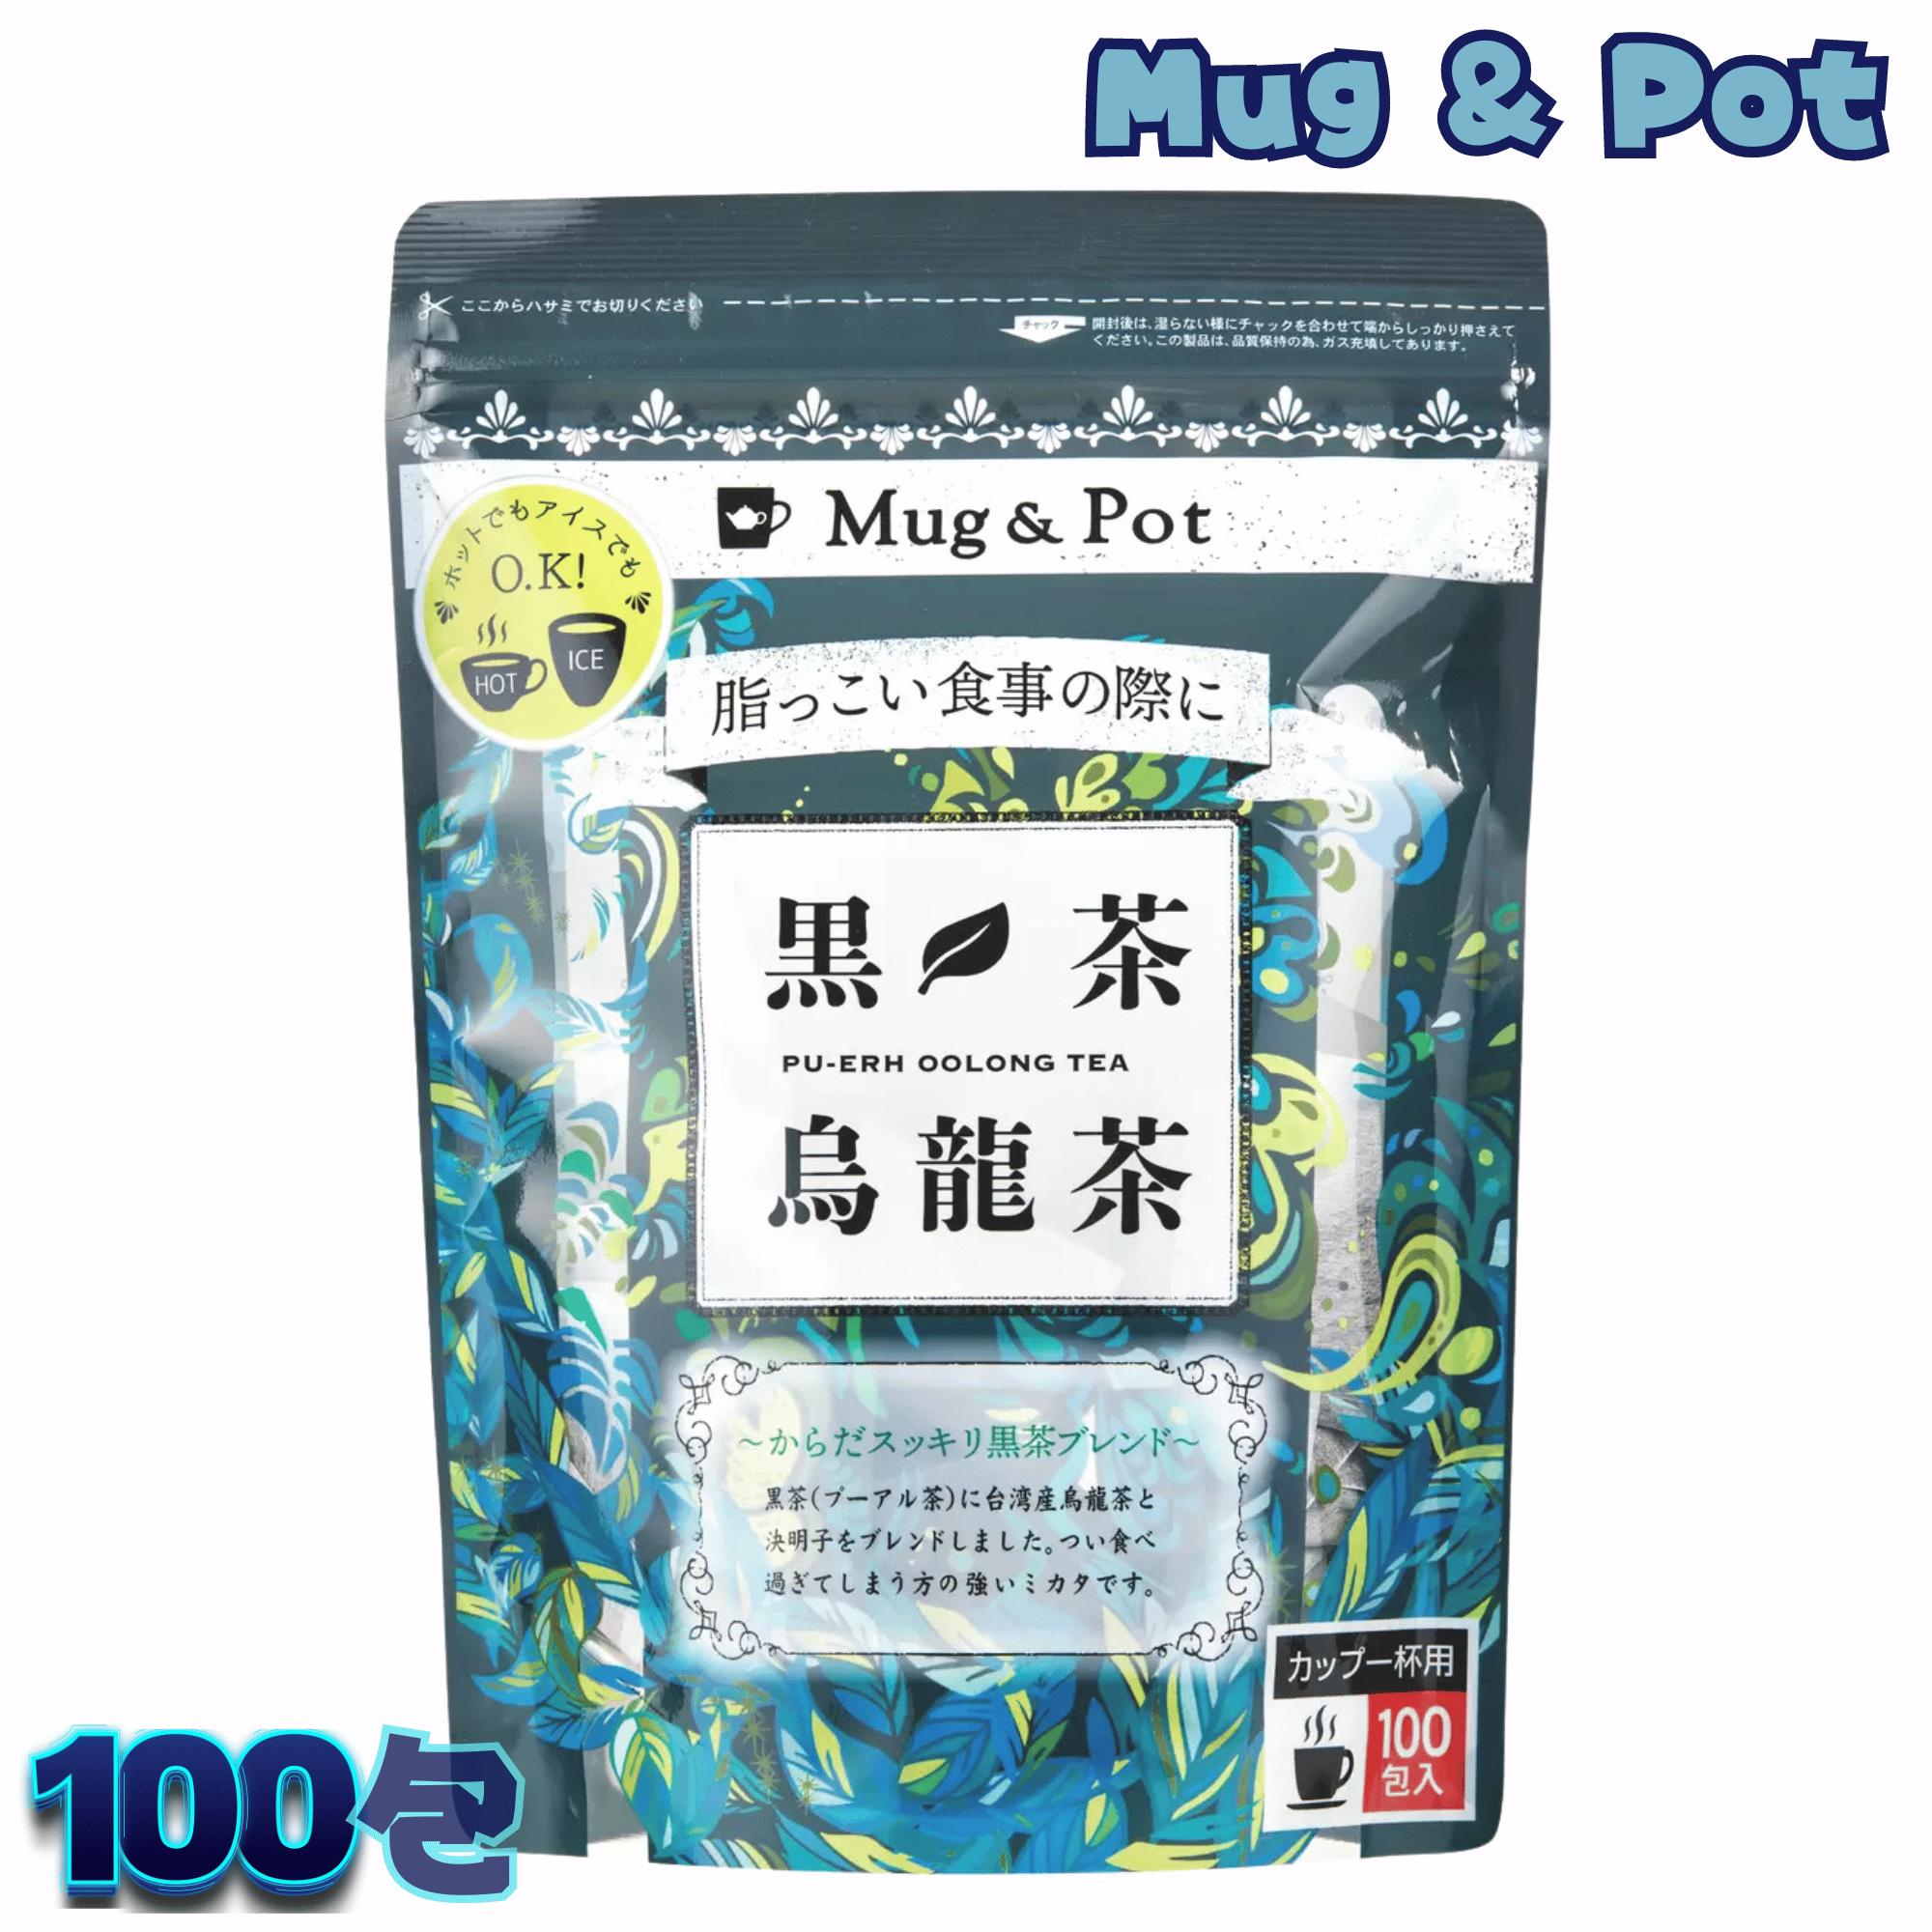 黒茶烏龍茶 Mug&Pot プーアル茶 ウーロン茶 ブレンド 100 包入 Tokyo Tea Trading コストコ